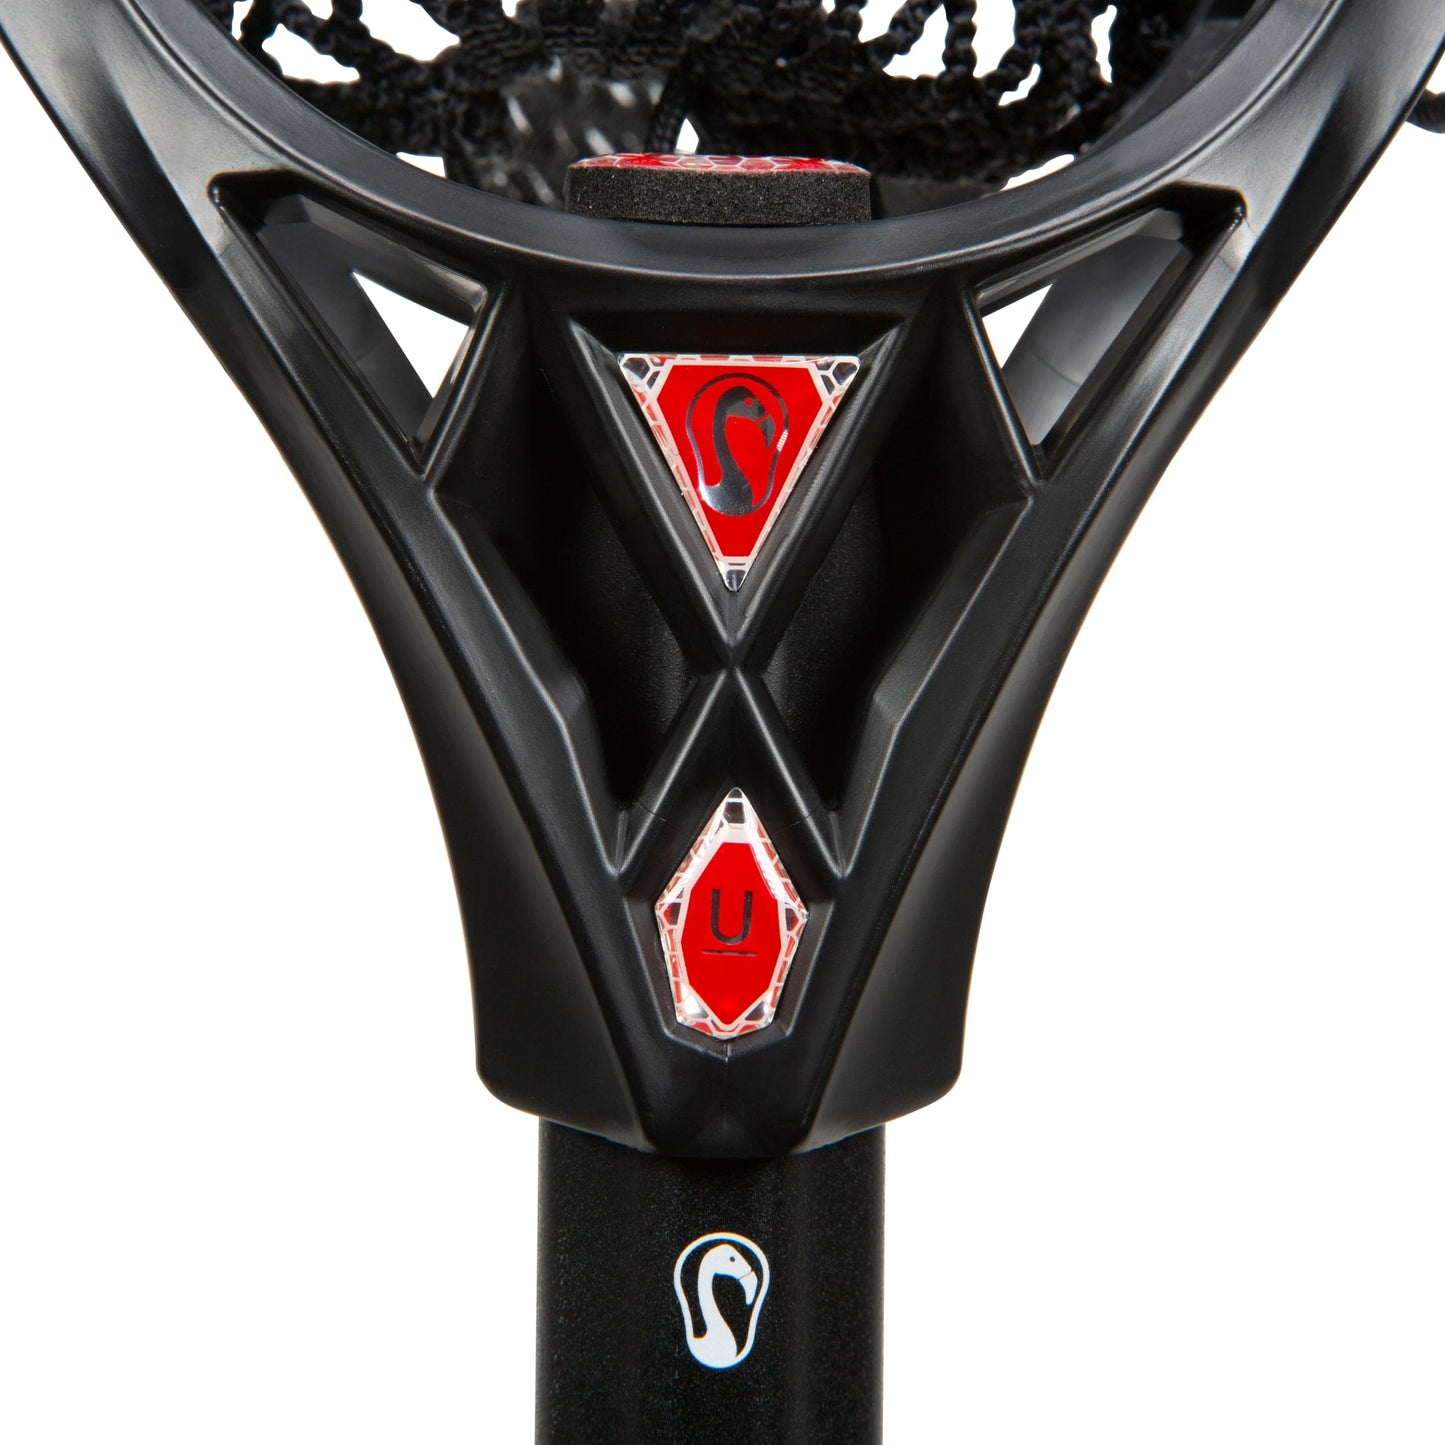 Carbon Pro Universal Complete Lacrosse Stick